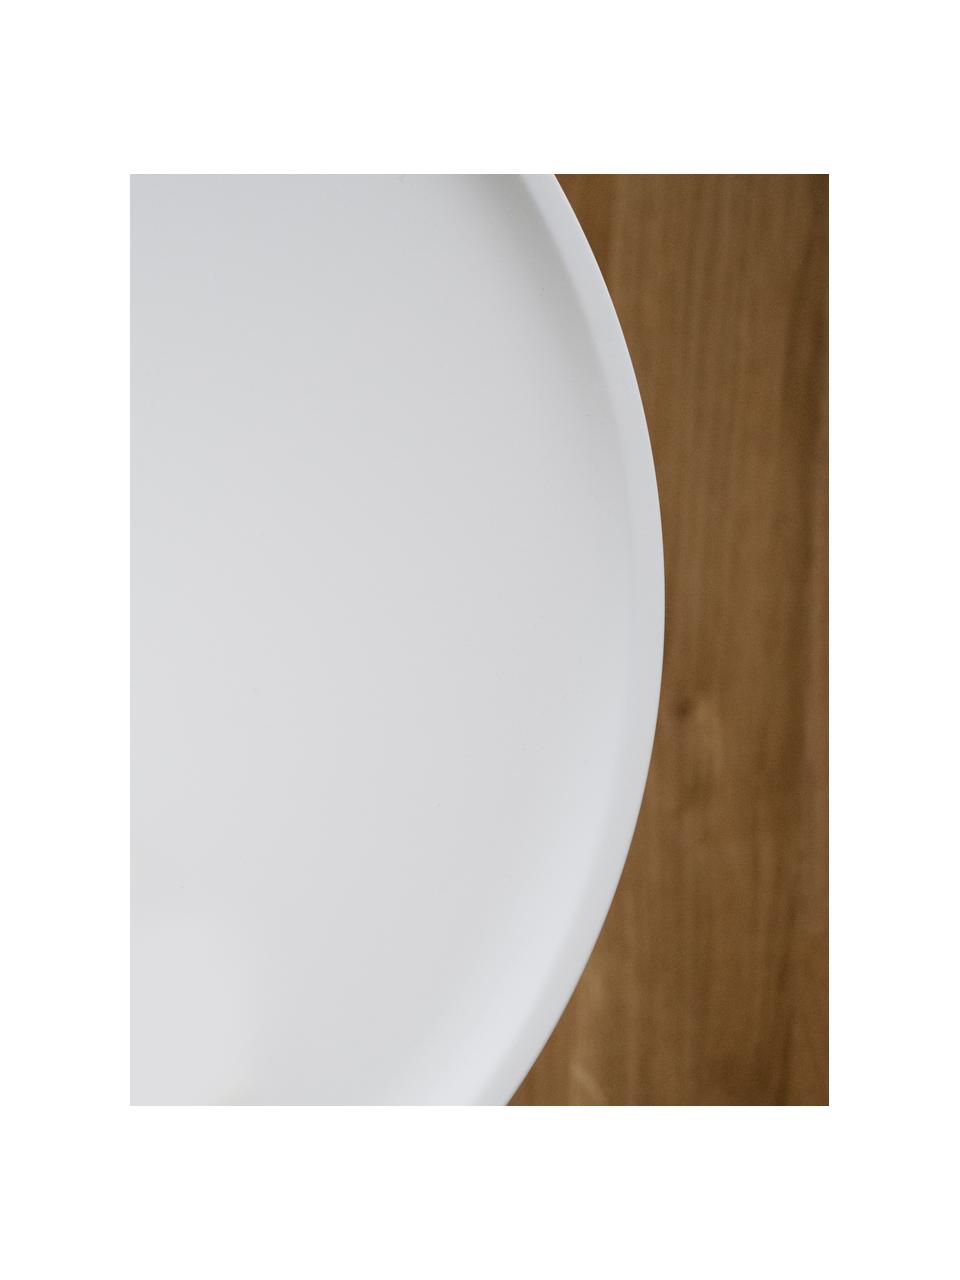 Couchtisch Daisy in Weiß, Tischplatte: Mitteldichte Holzfaserpla, Beine: Gummibaumholz, lackiert, Weiß, Ø 80 cm